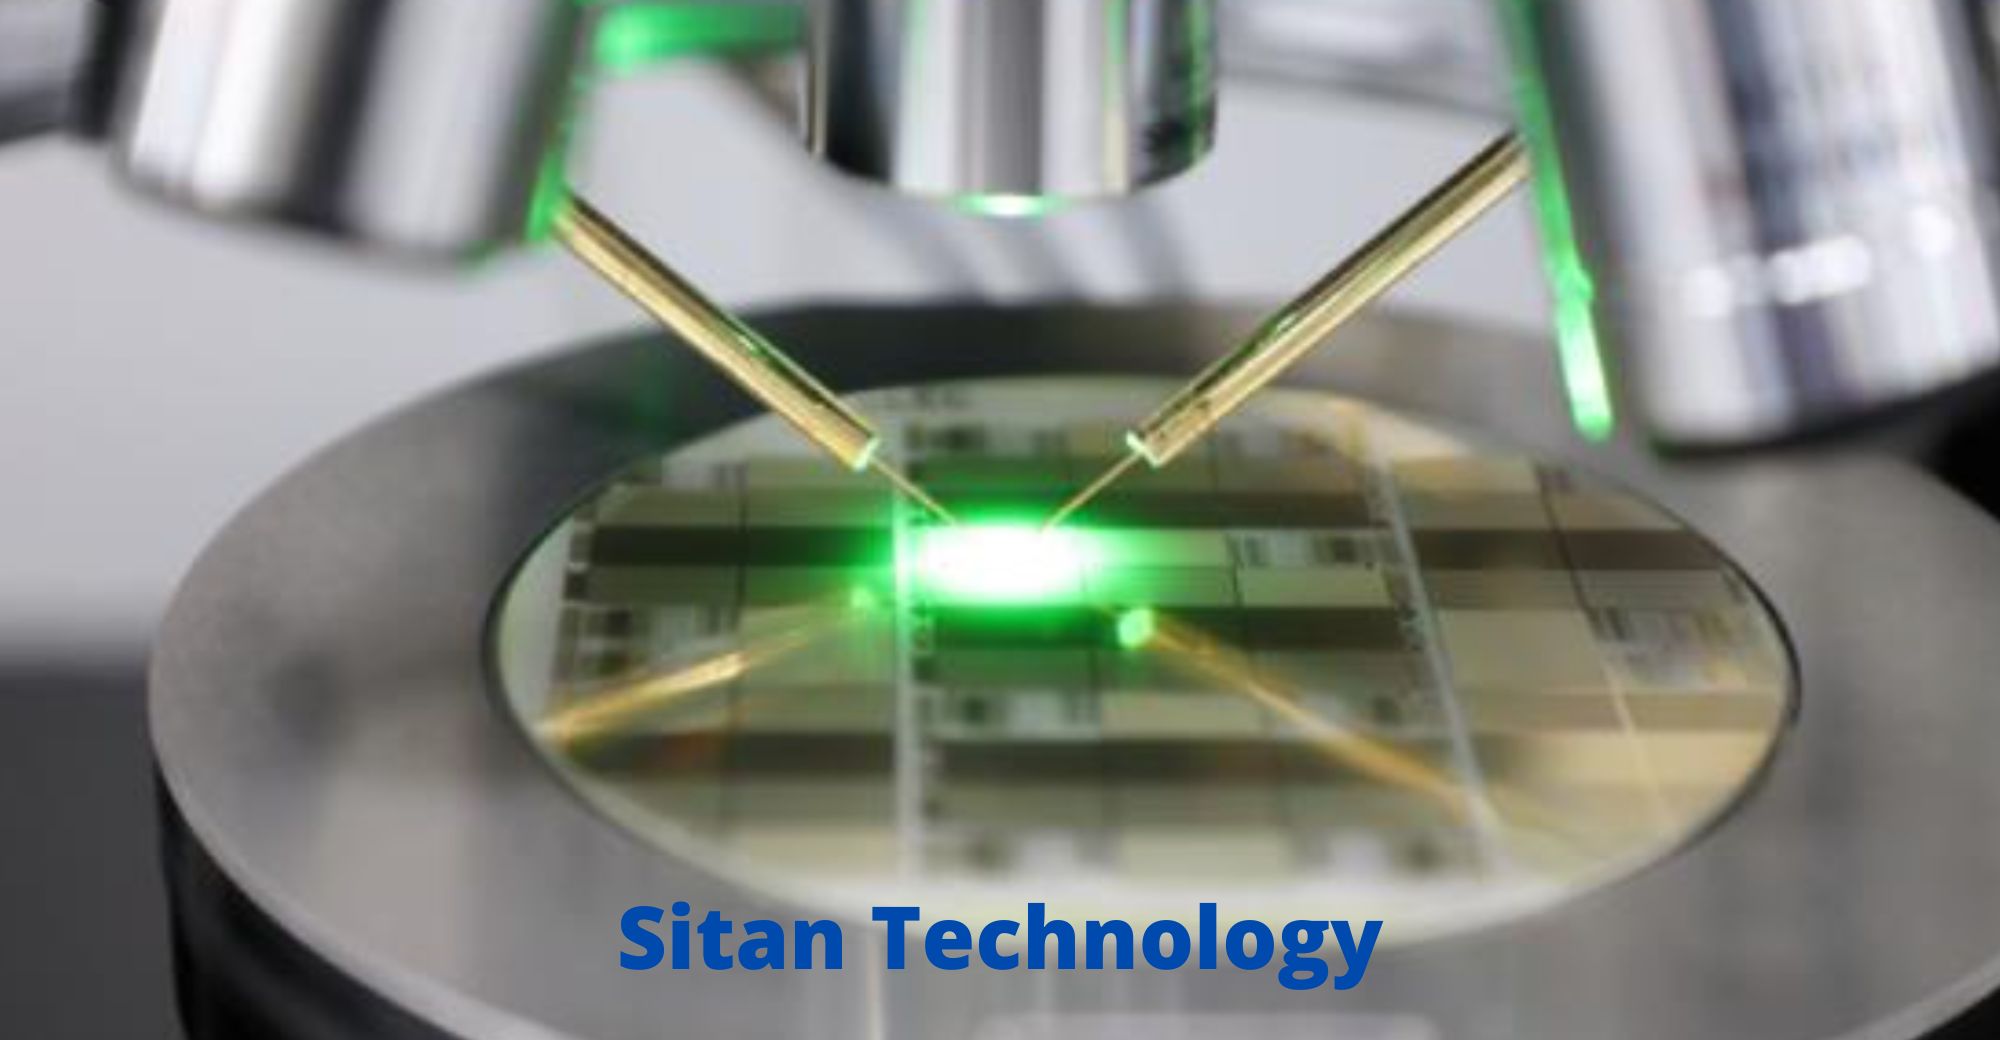 Sitan Technology, производитель микросветодиодных чипов, получает несколько раундов финансирования